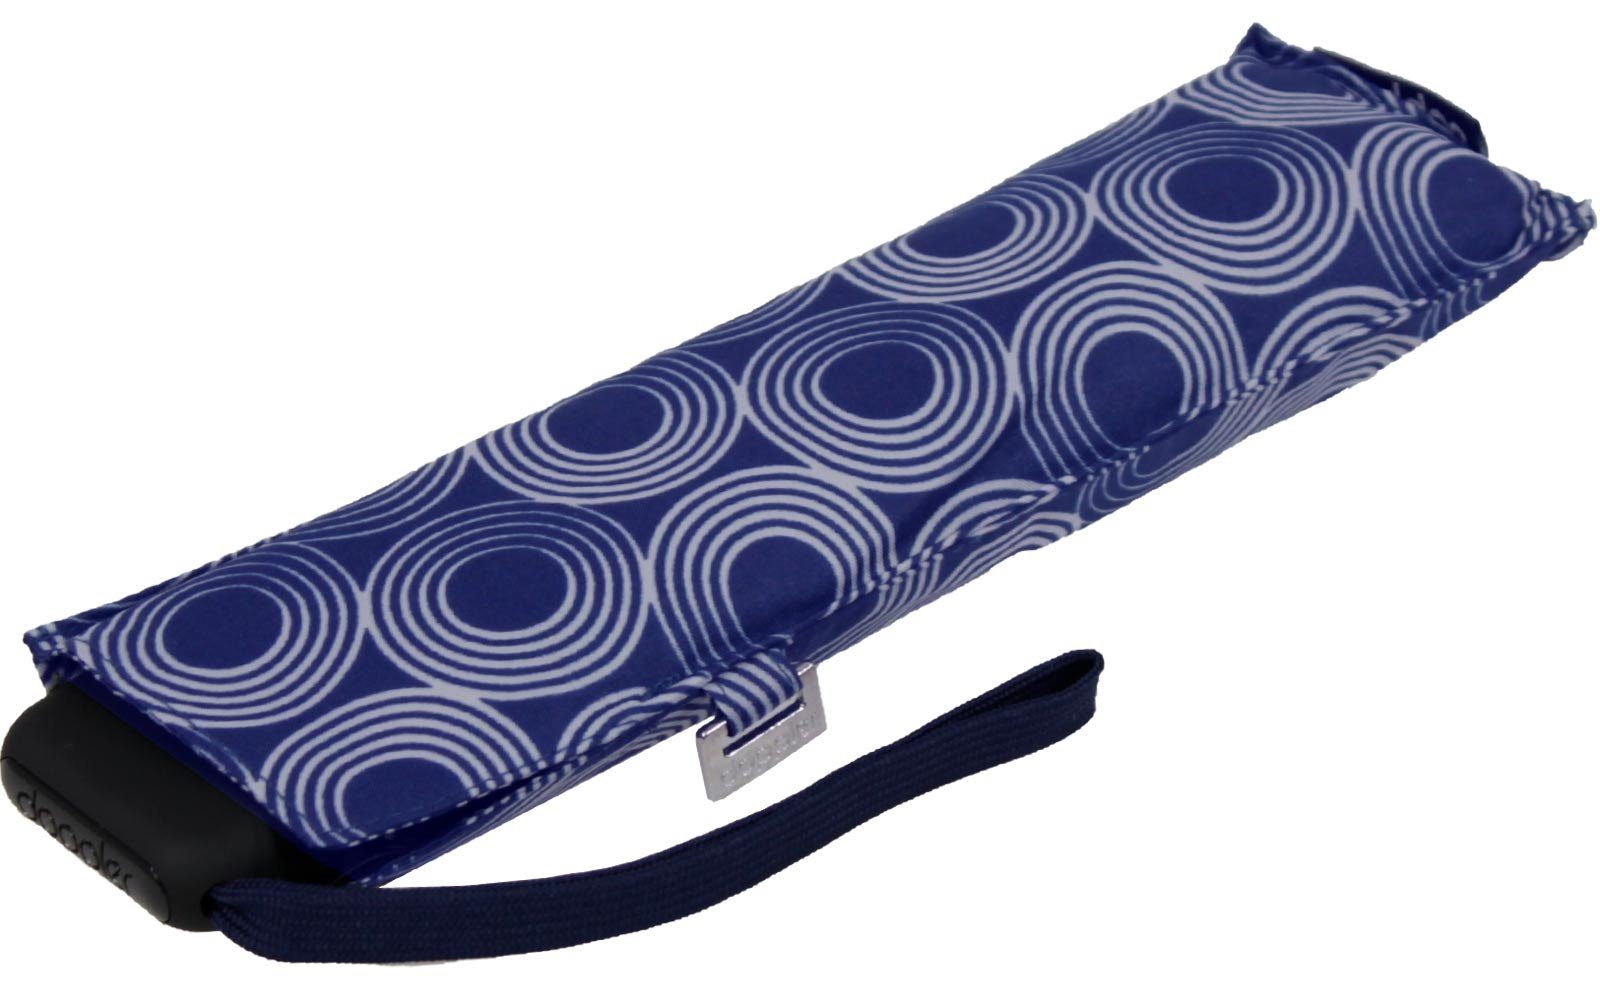 Begleiter dieser treue Schirm für jede flacher doppler® ein Taschenregenschirm findet Platz und überall blau leichter Tasche,